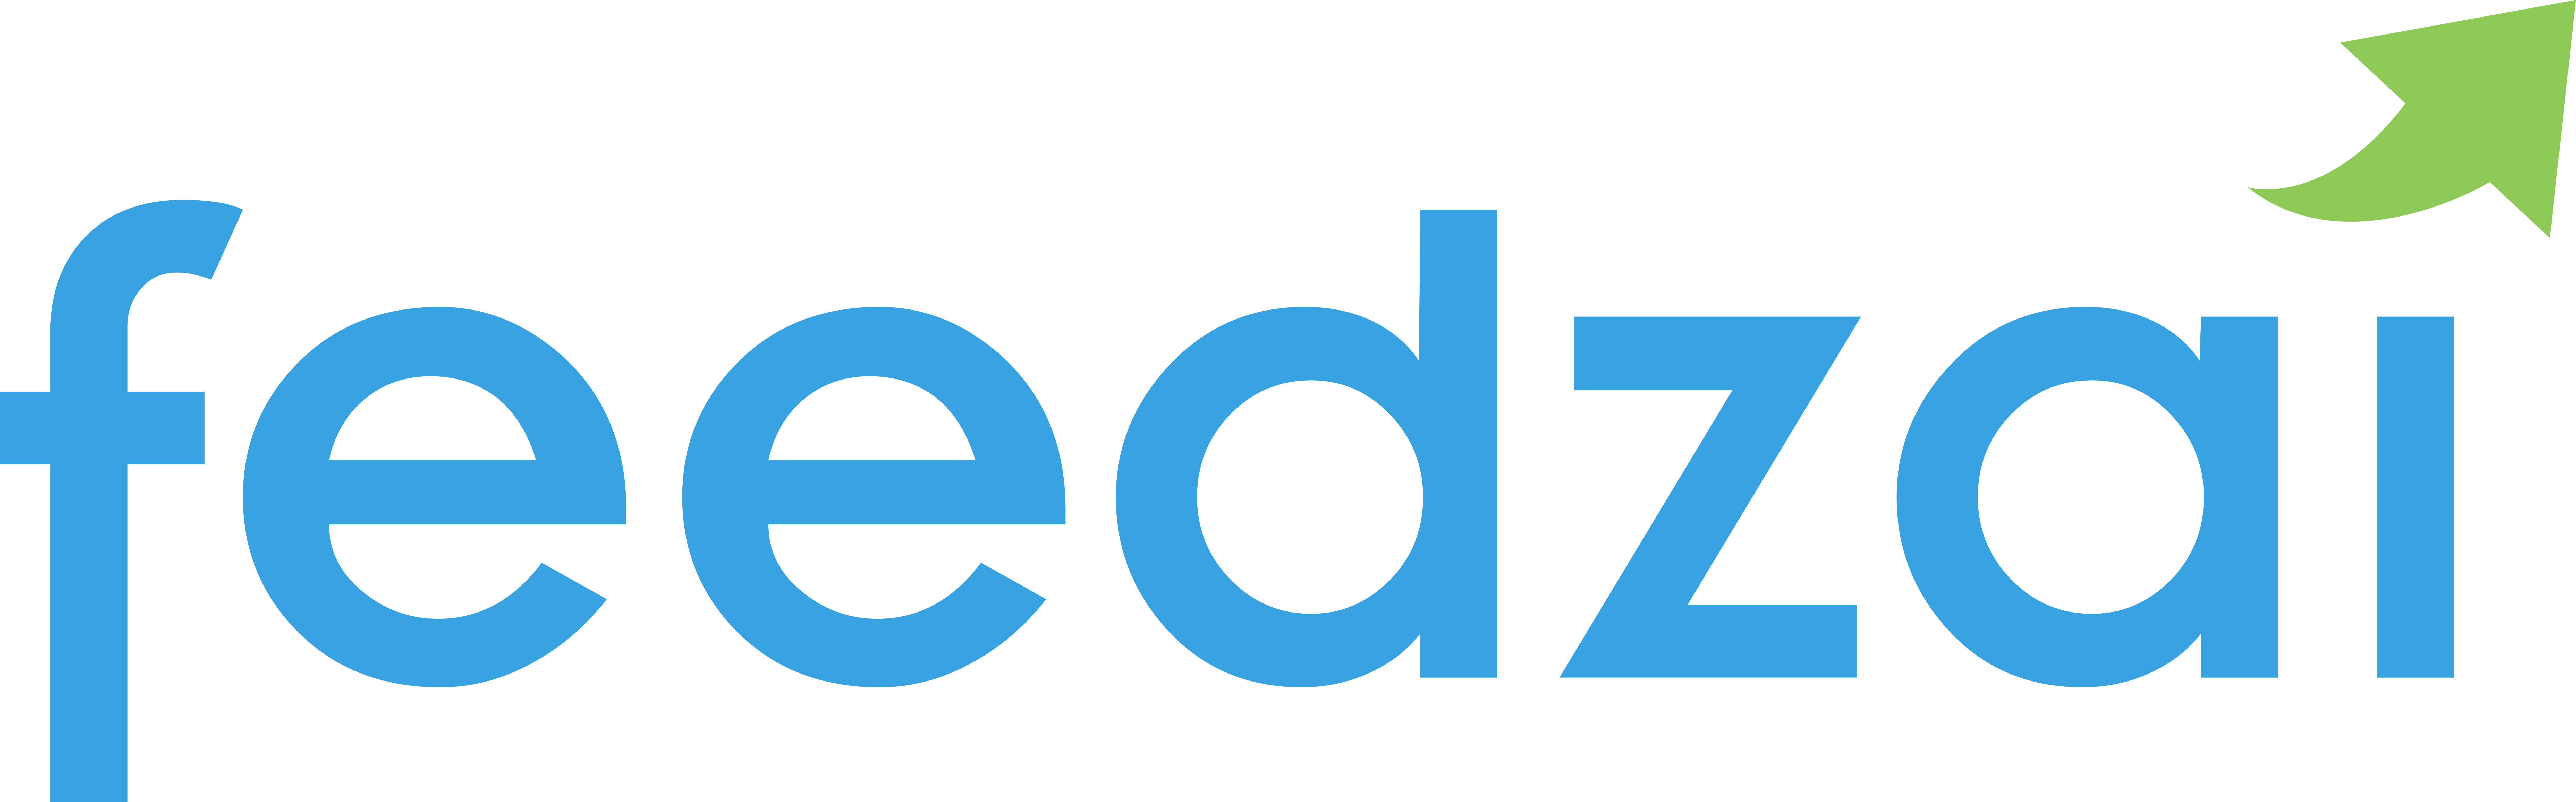 feedzai-logo_4000 (10) (002).png